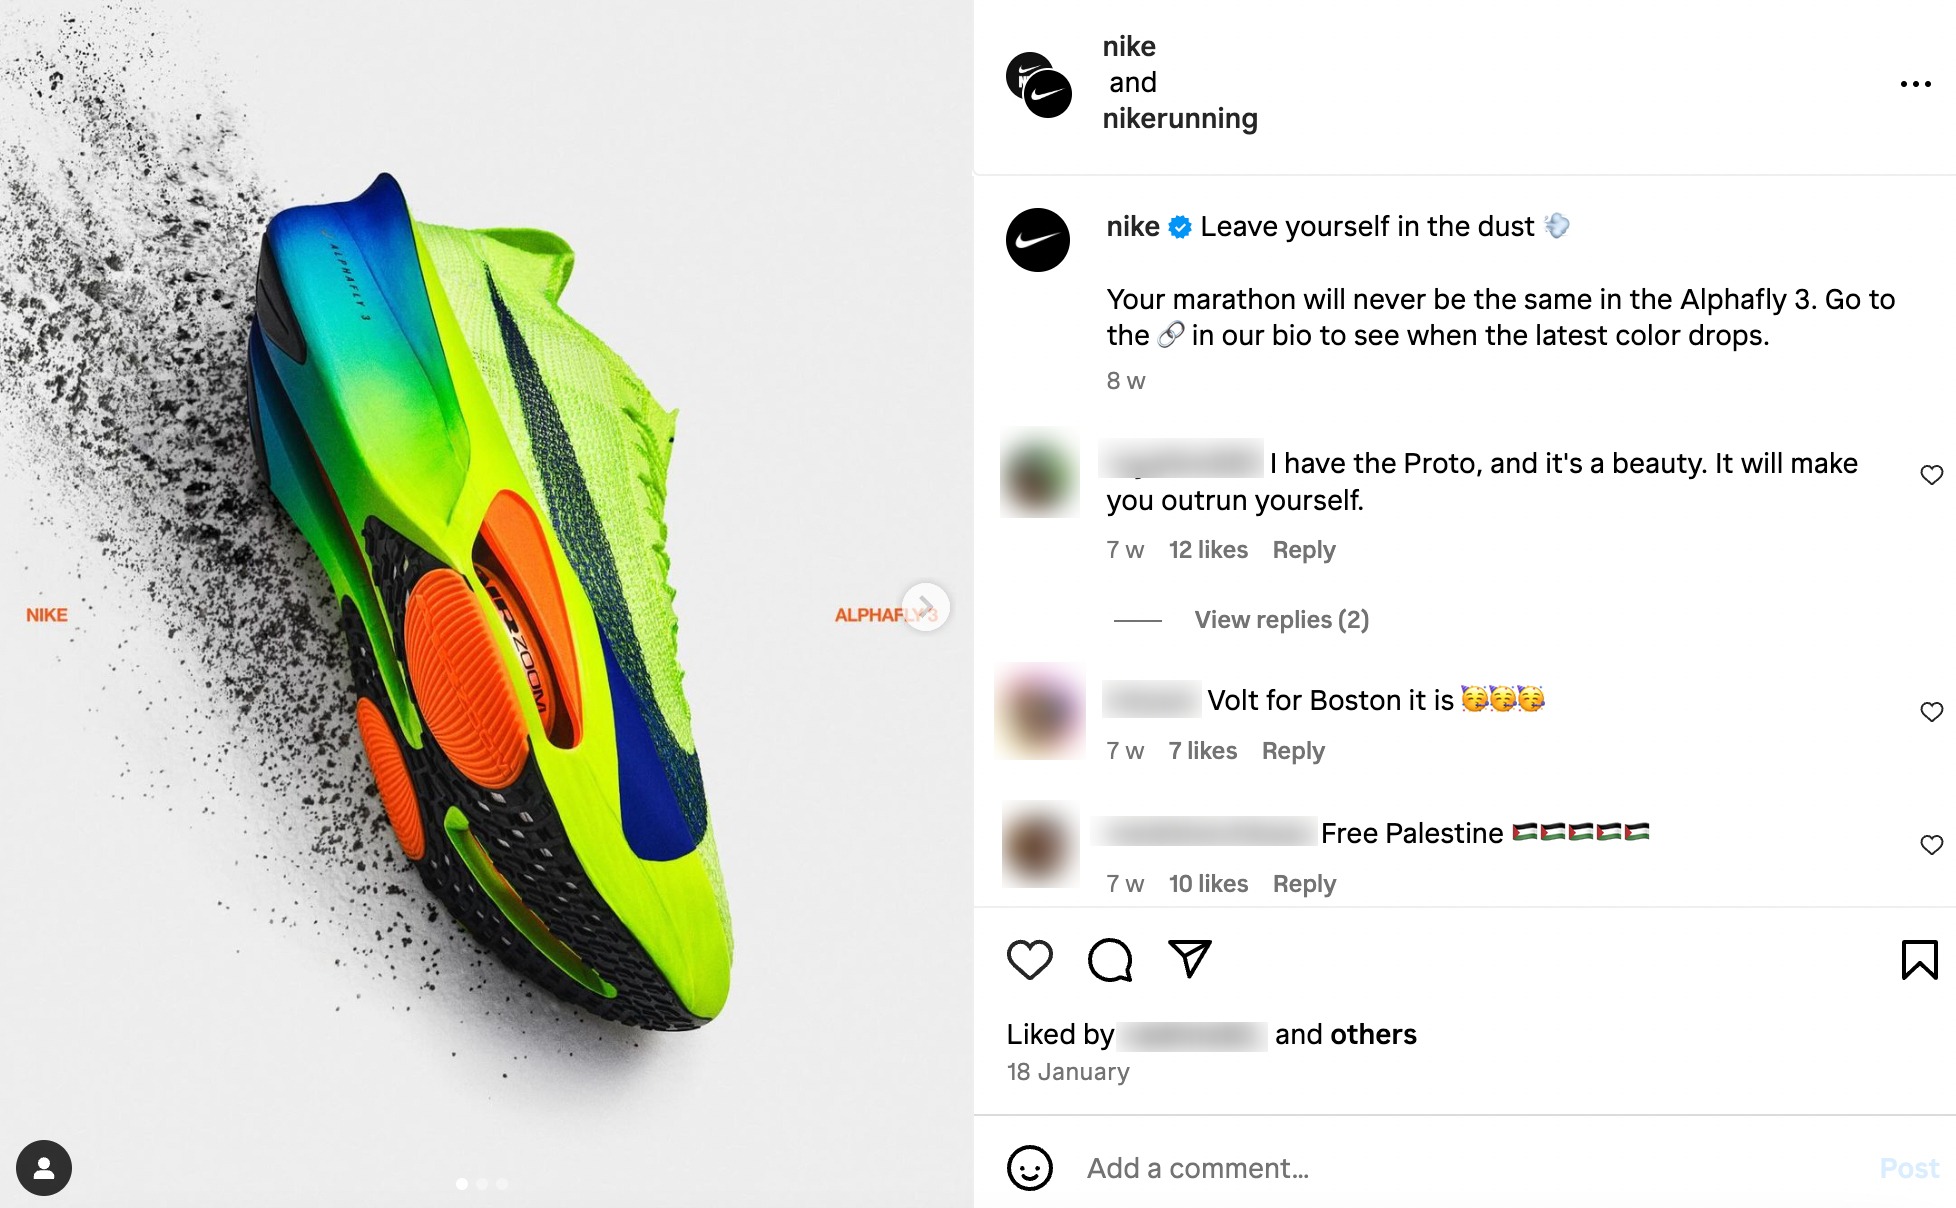 Curadoria de conteúdo: exemplo de engajamento da Nike